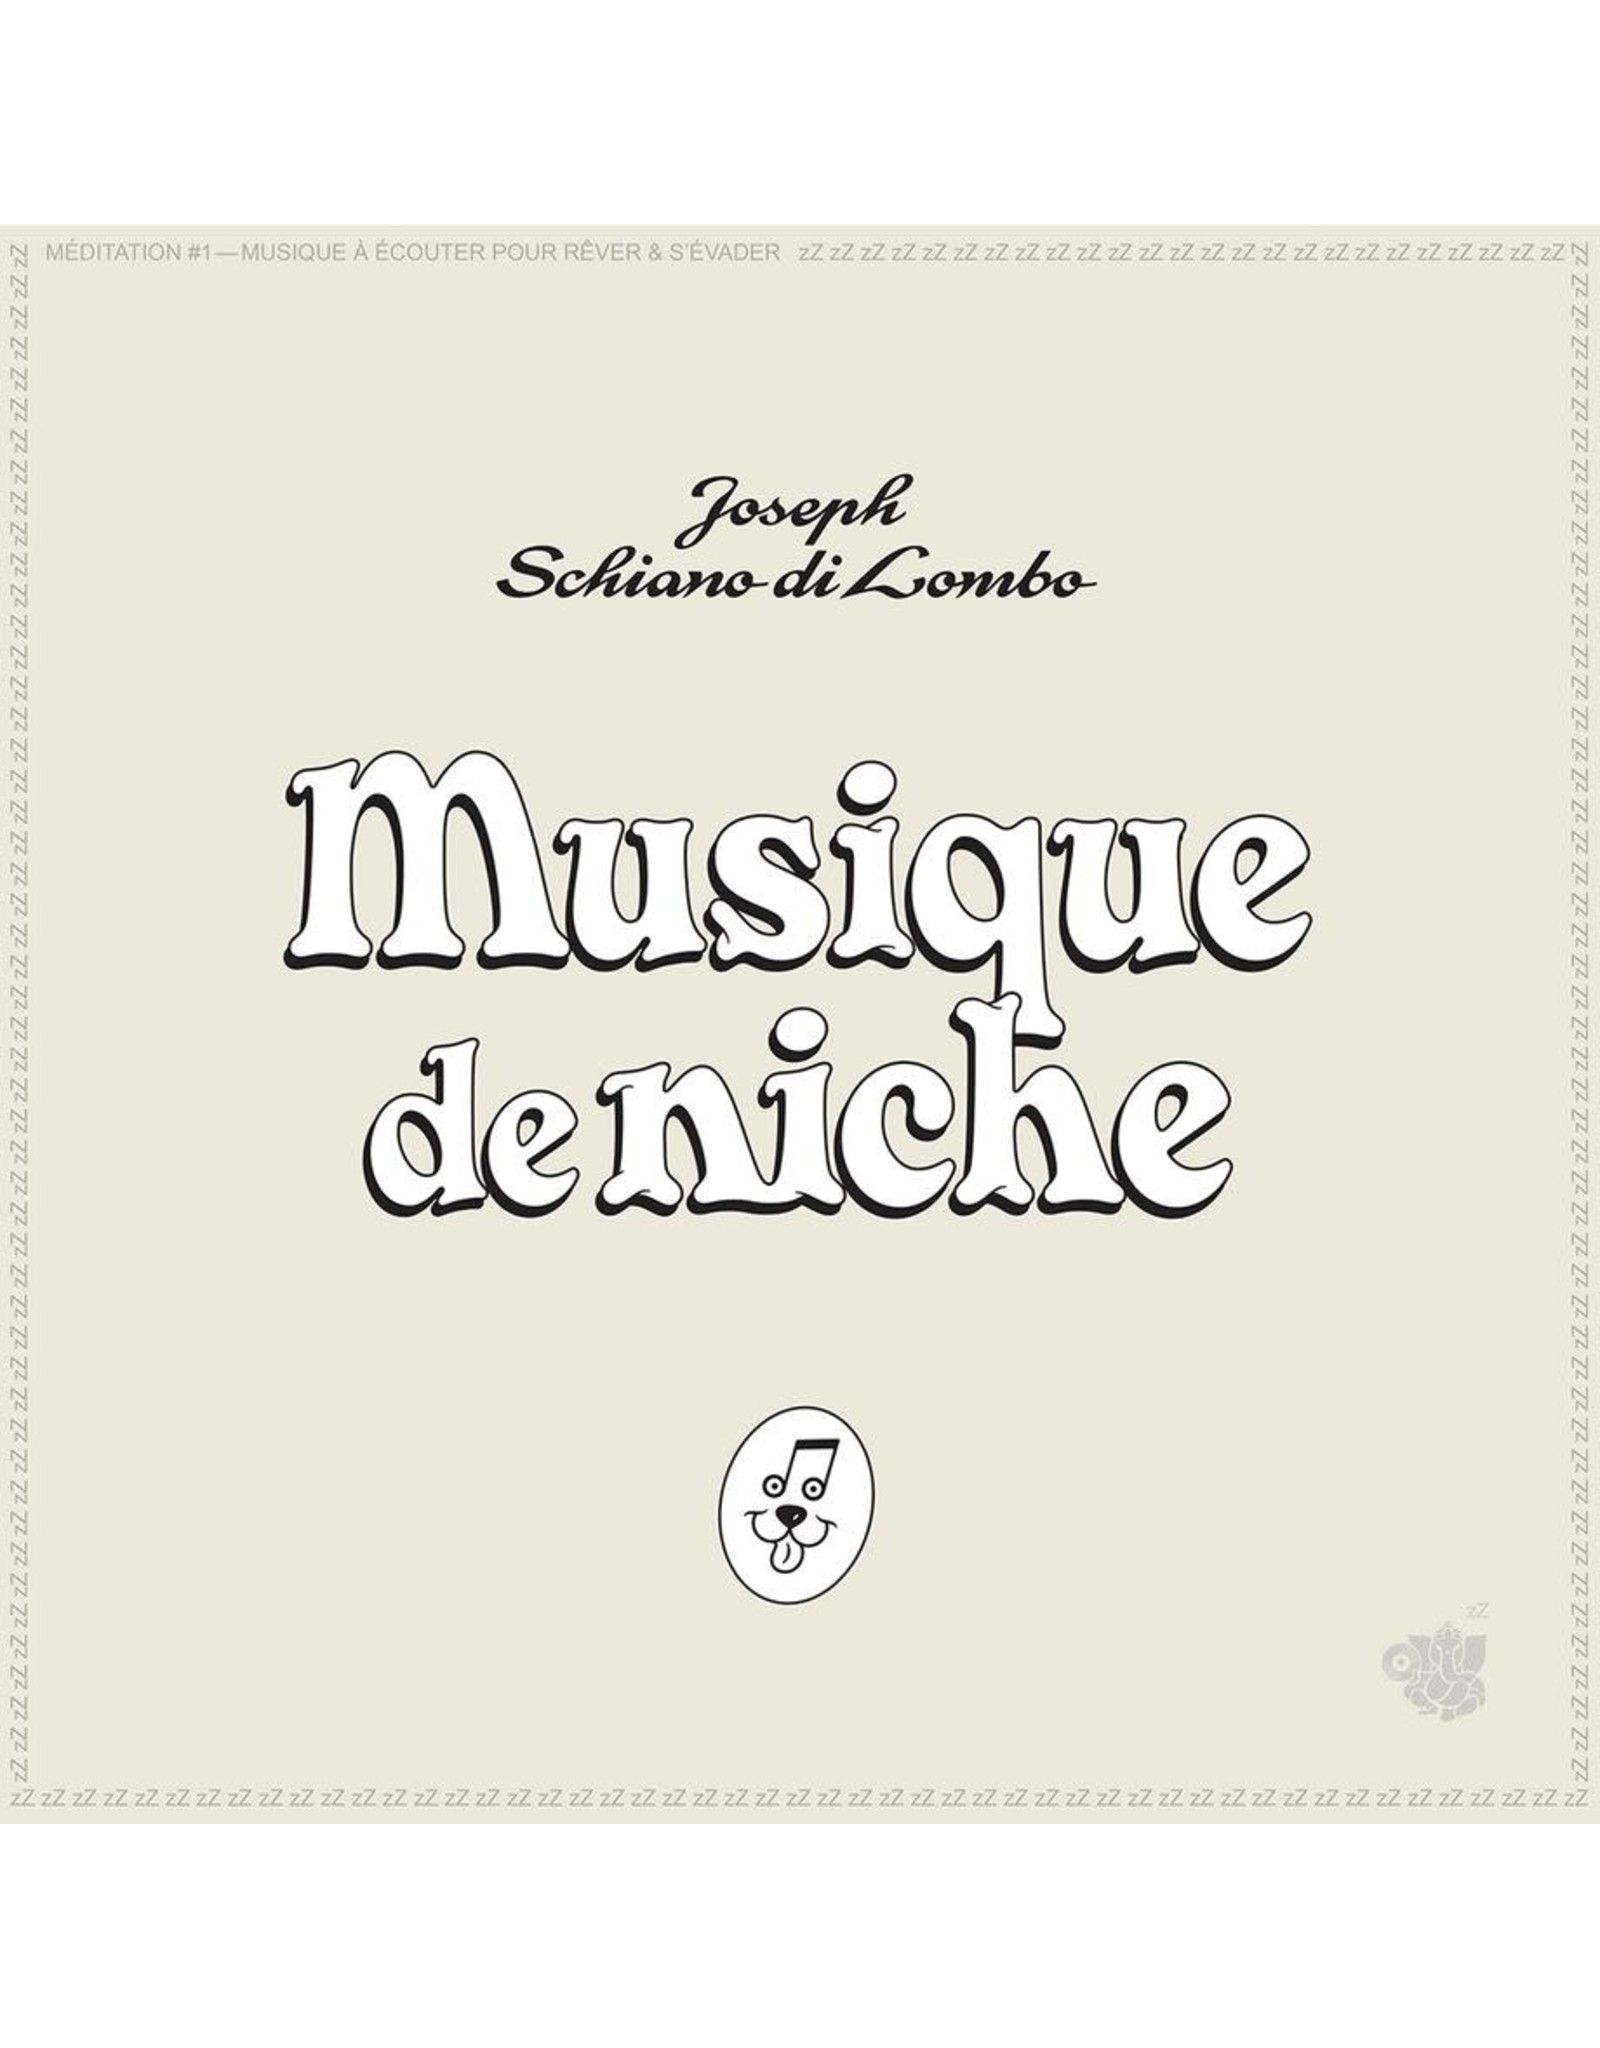 Cracki di Lombo, Joseph Schiano: Musique de Niche LP